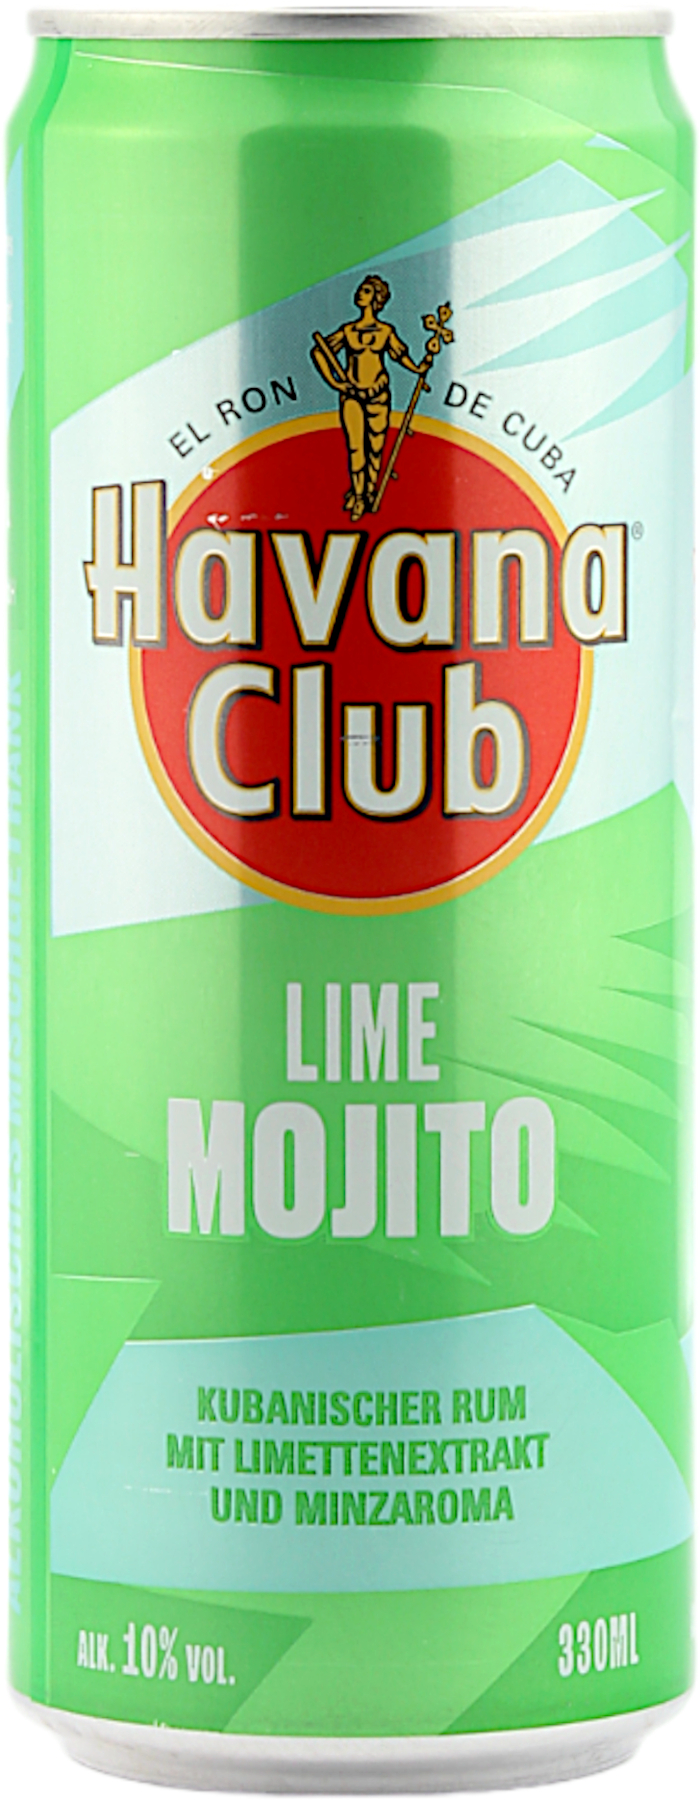 Havana Club Lime Mojito Dose (Einweg) 10.0% 0,33l